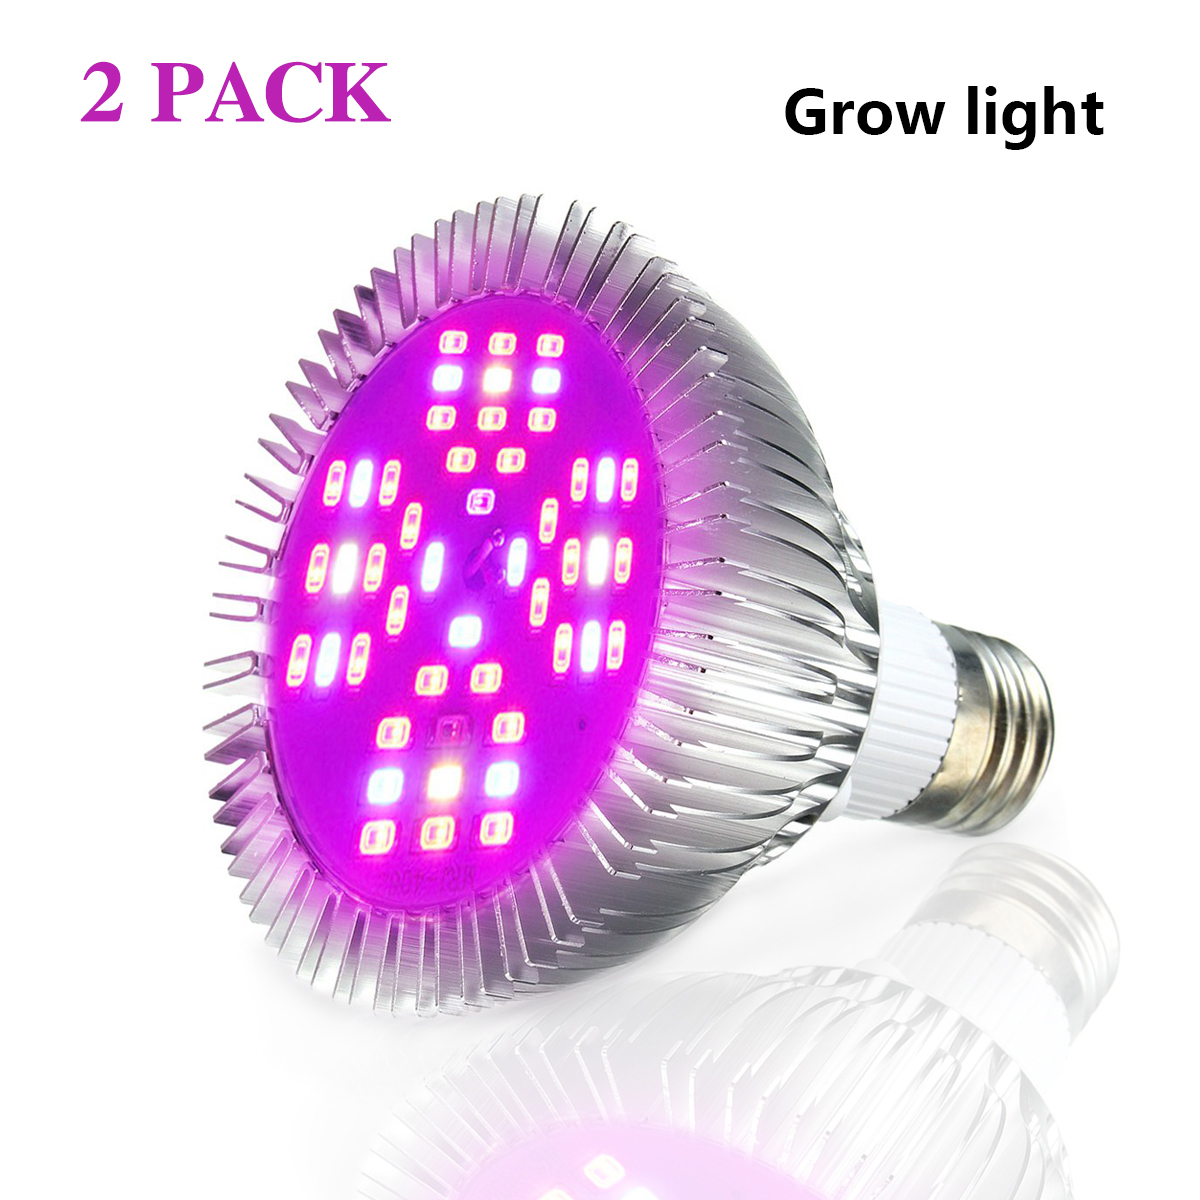 2PCS-E27-5730-1000lumen-15W-LED-Growing-Lamp-Full-Spectrum-48pcs-LED-Lamp-Beads-Plant-Light-1943465-1